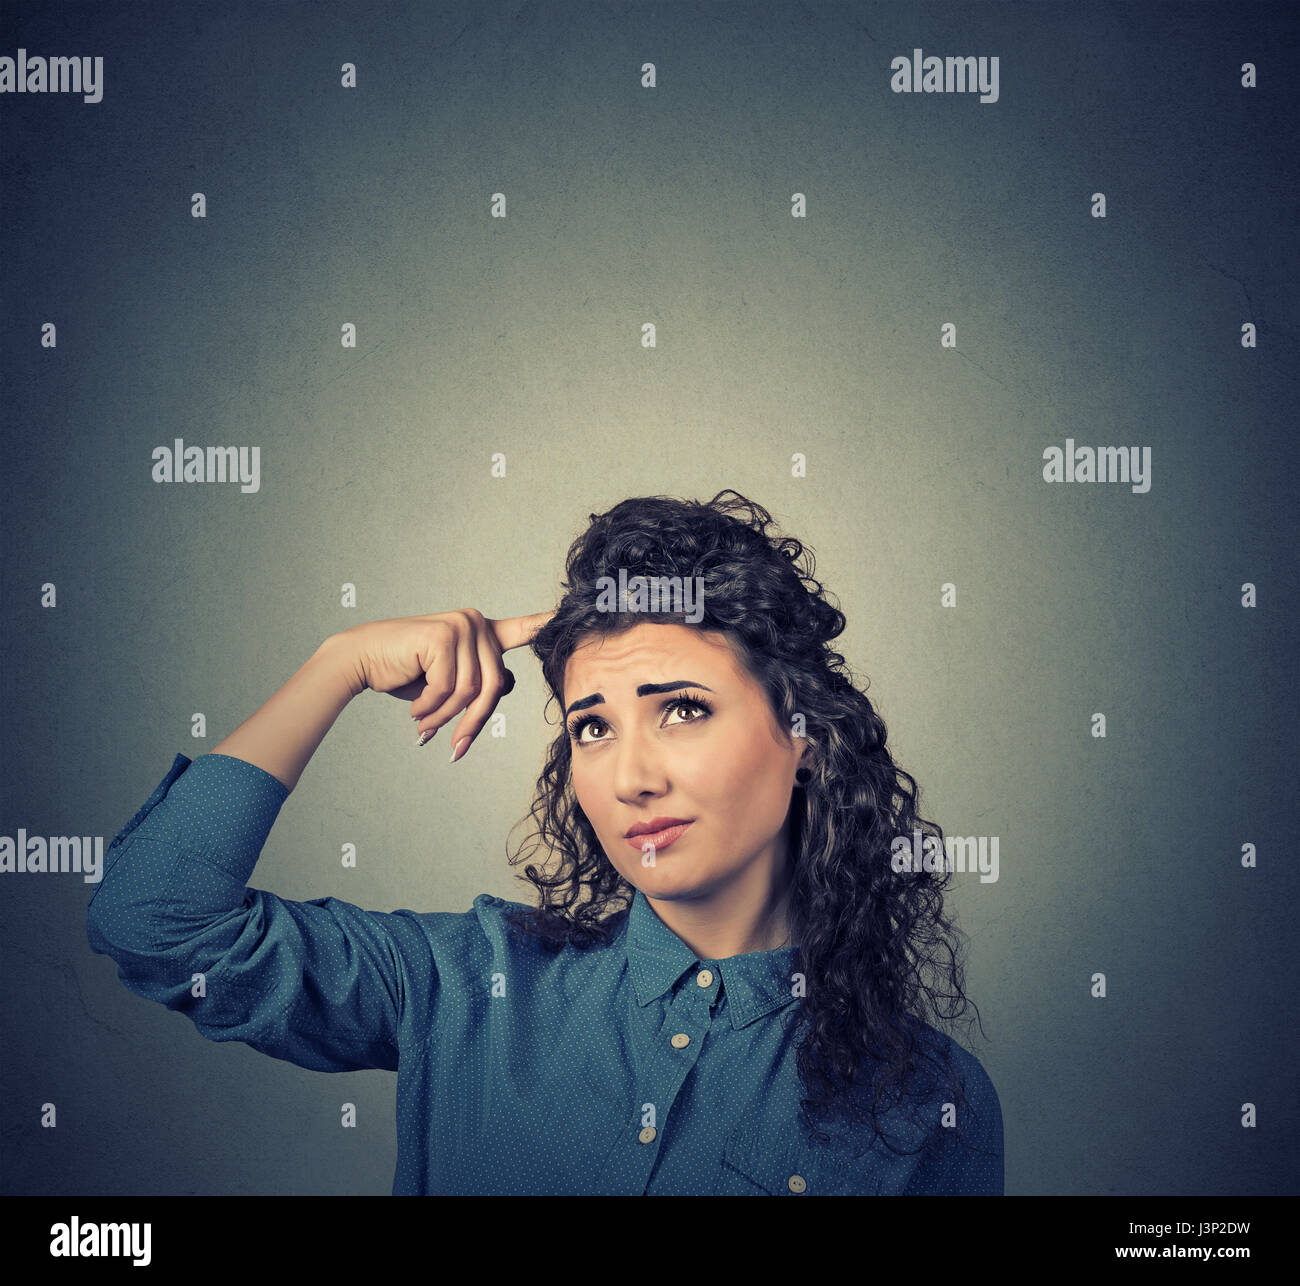 Porträt Closeup verwirrt skeptisch junge Frau auszudenken suchen isoliert auf grauem Hintergrund Kopie Wandfläche über Kopf. Menschliche Ausdrucksformen, emotion Stockfoto